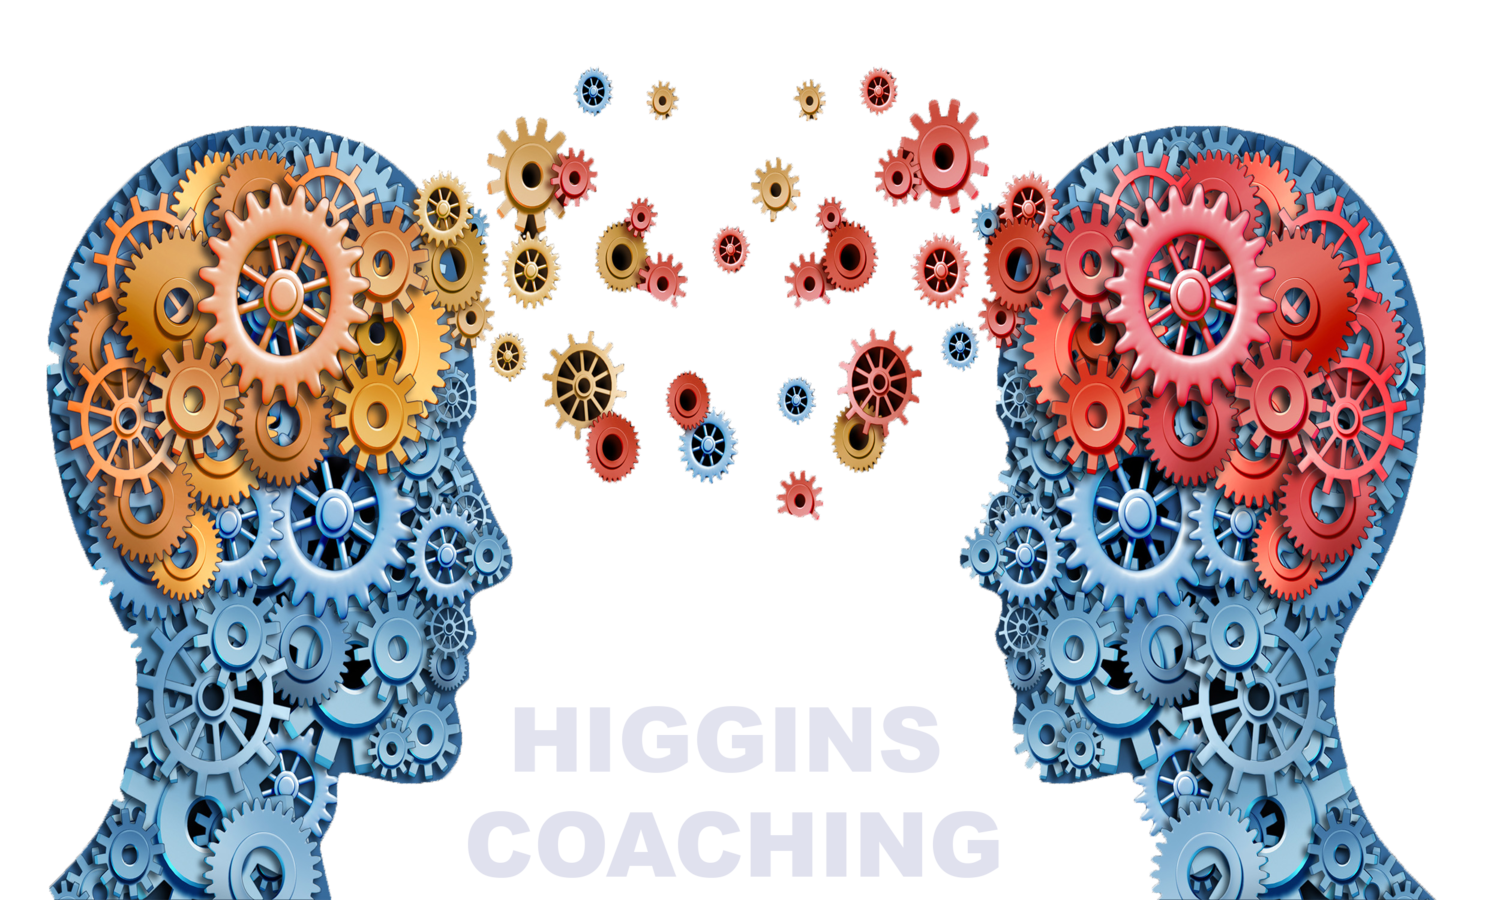 Higgins Coaching